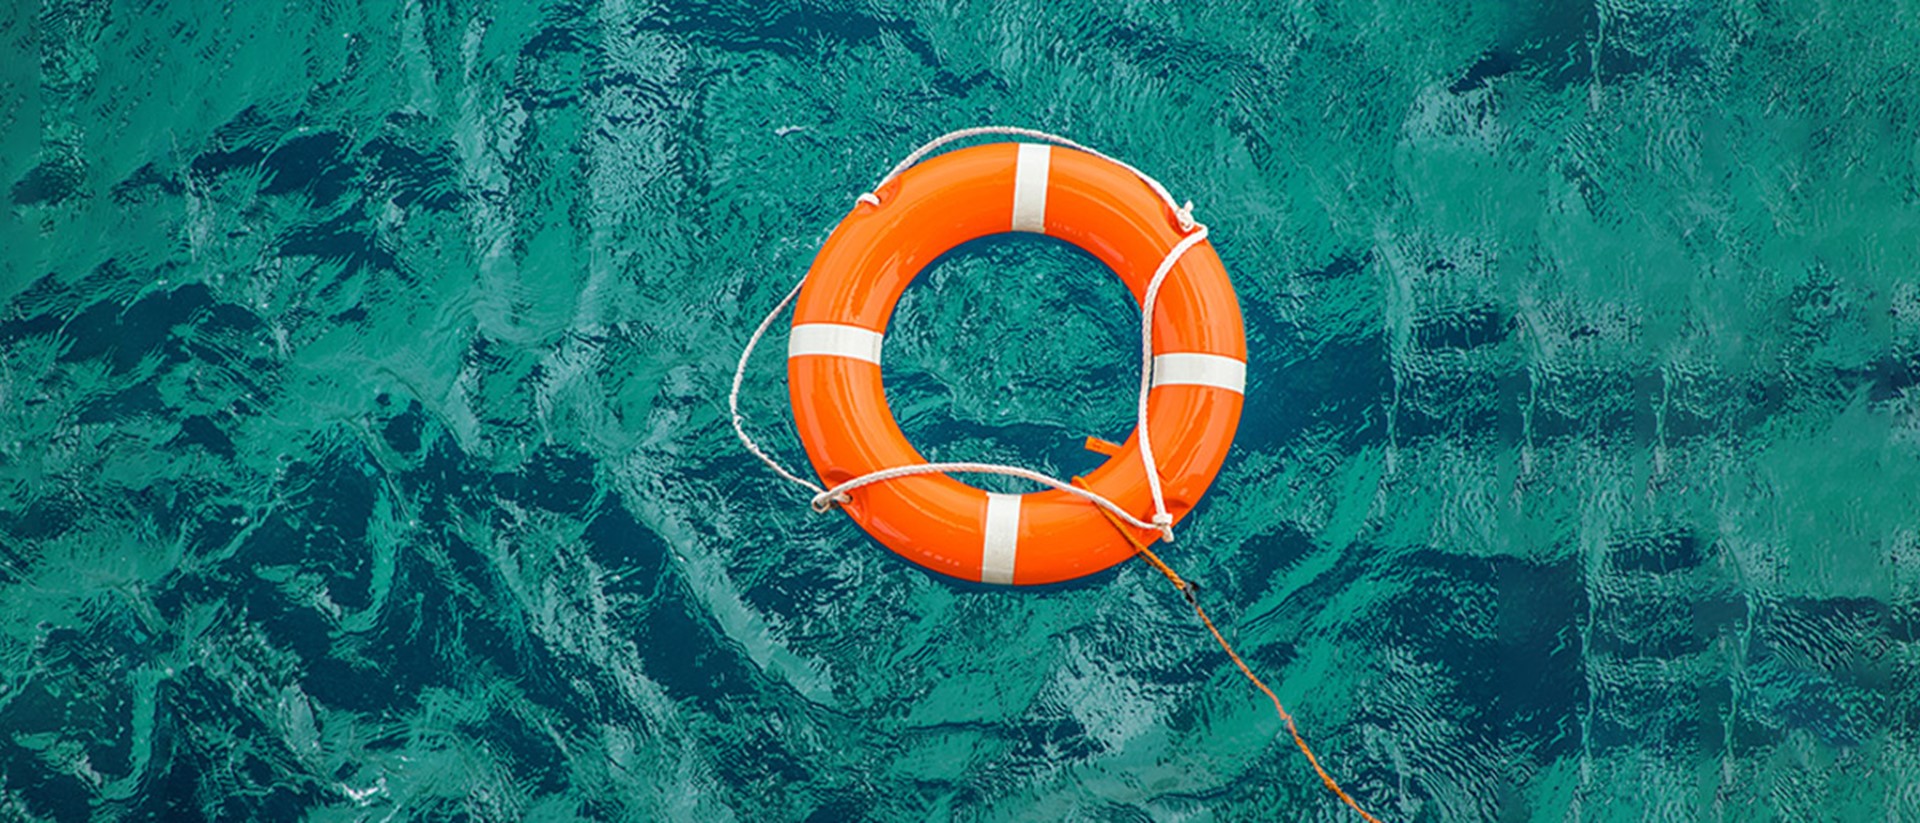 Image of an orange life raft on water